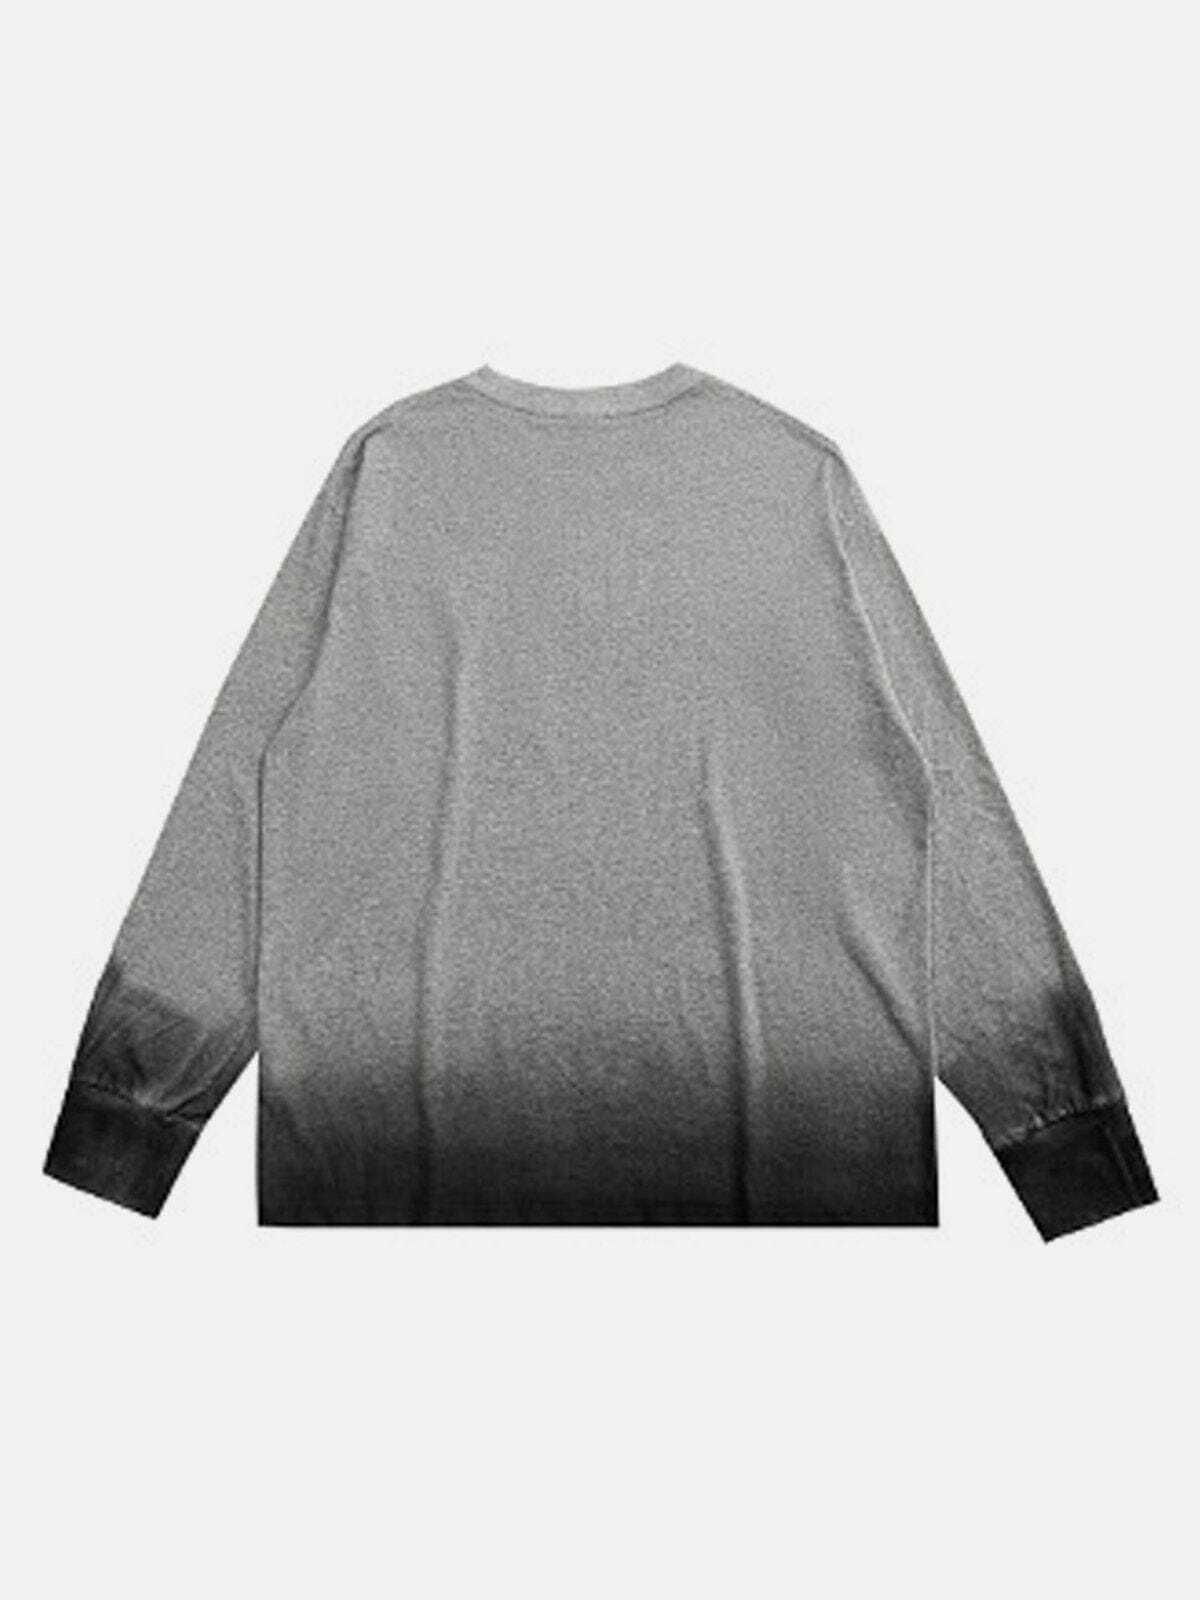 blooming gradient sweatshirt edgy streetwear essential 1050